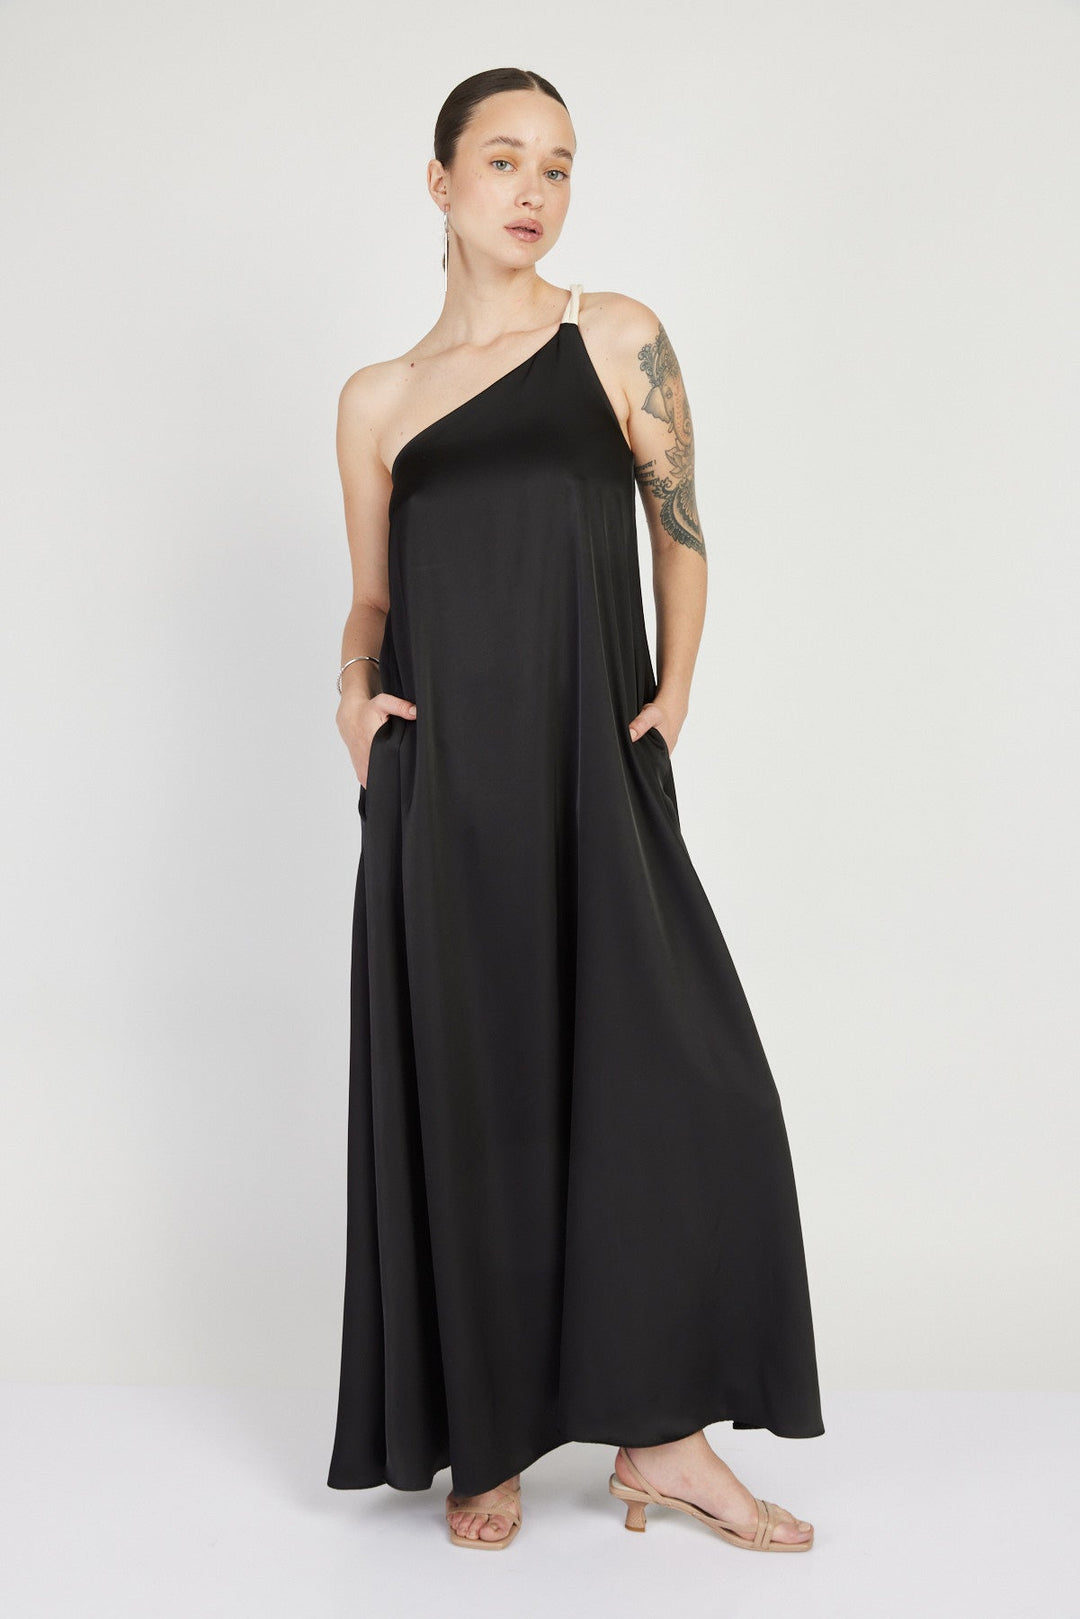 שמלת רודאו וואן שולדר בצבע שחור - Razili X Noritamy